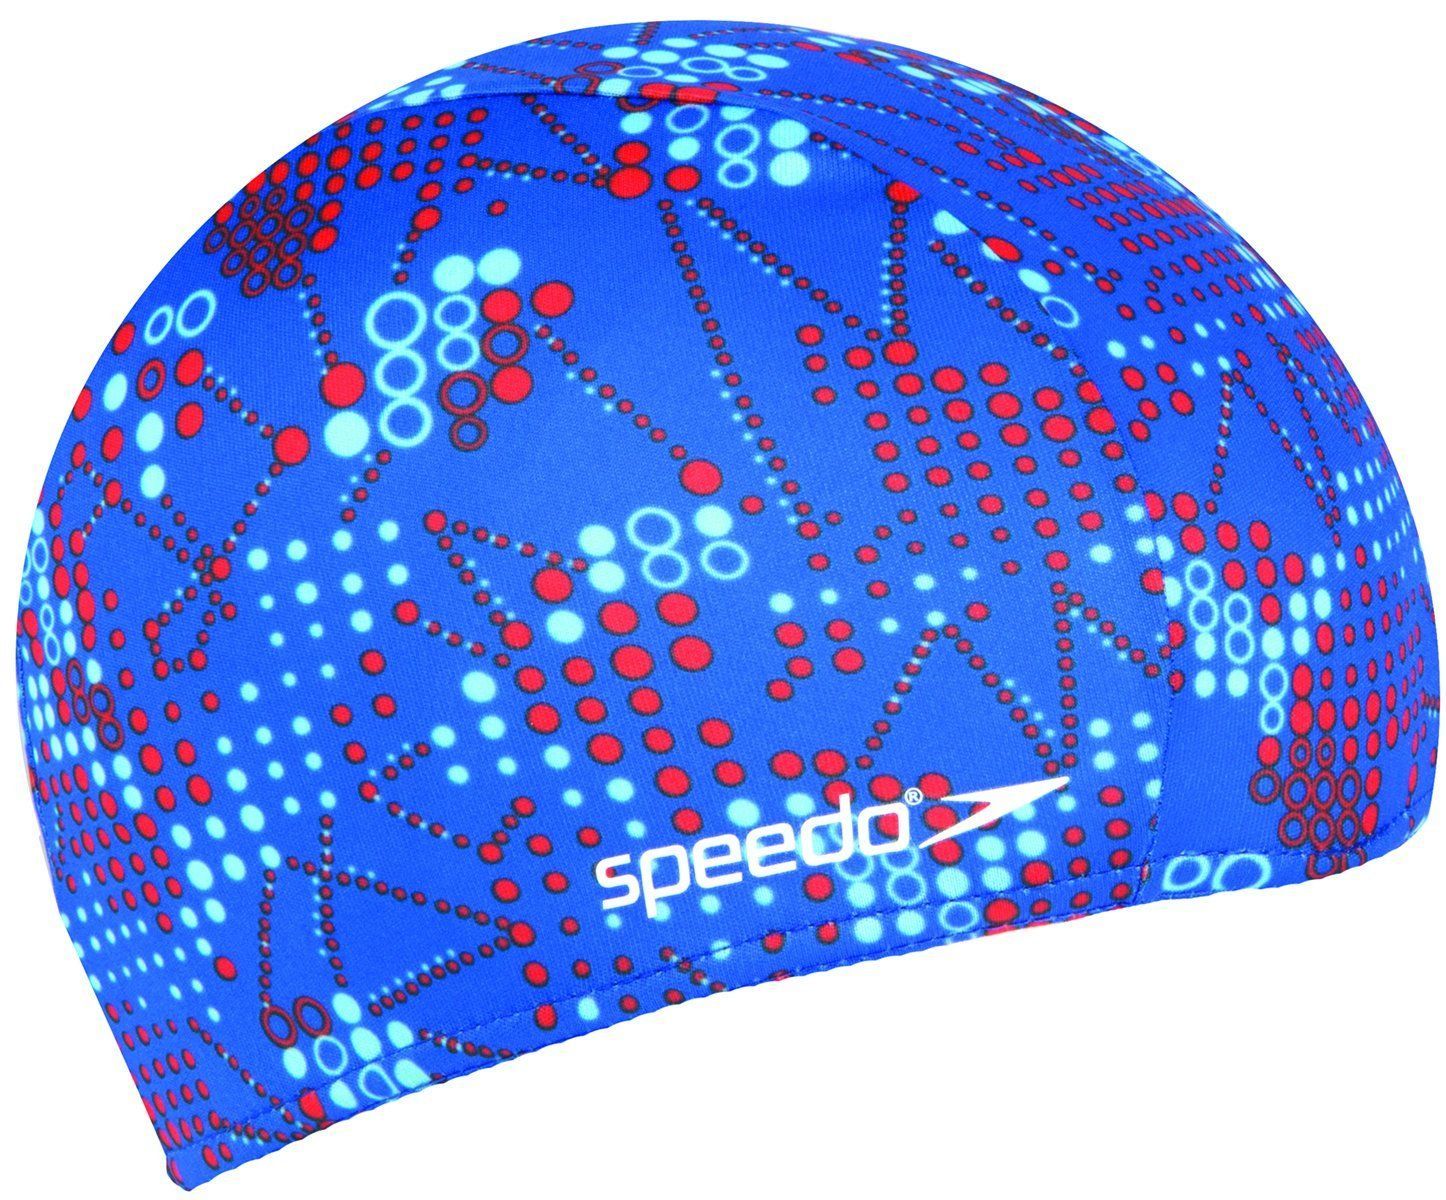  Speedo - Nón Bơi Trẻ Em Vải Polyester Printed Junior (Xanh Dương) 